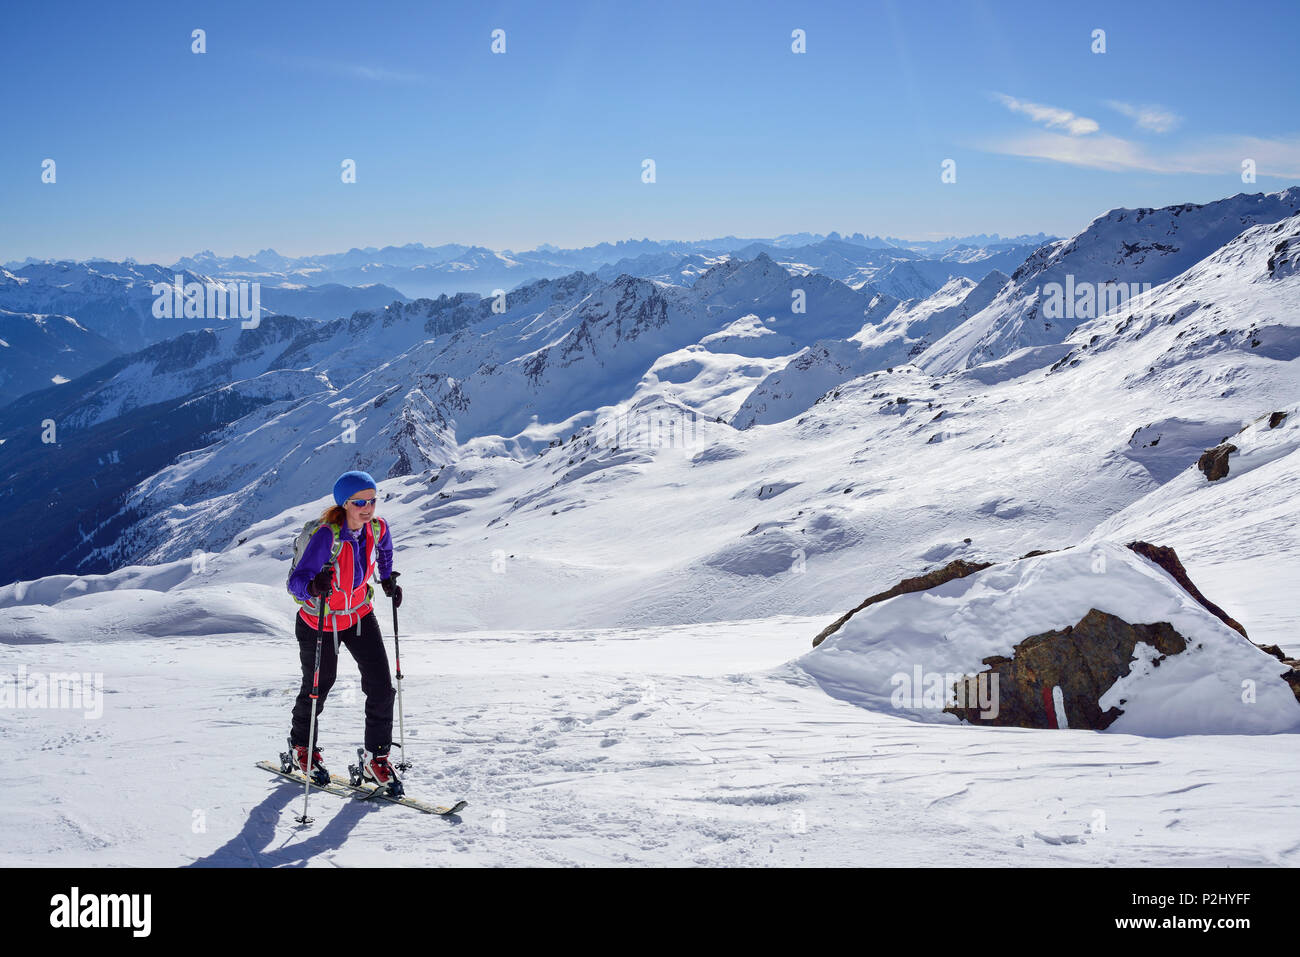 Frau back-country skiing aufsteigender Richtung Schneespitze, Schneespitze, Tal der Pflersch, Stubaier Alpen, Südtirol, Italien Stockfoto